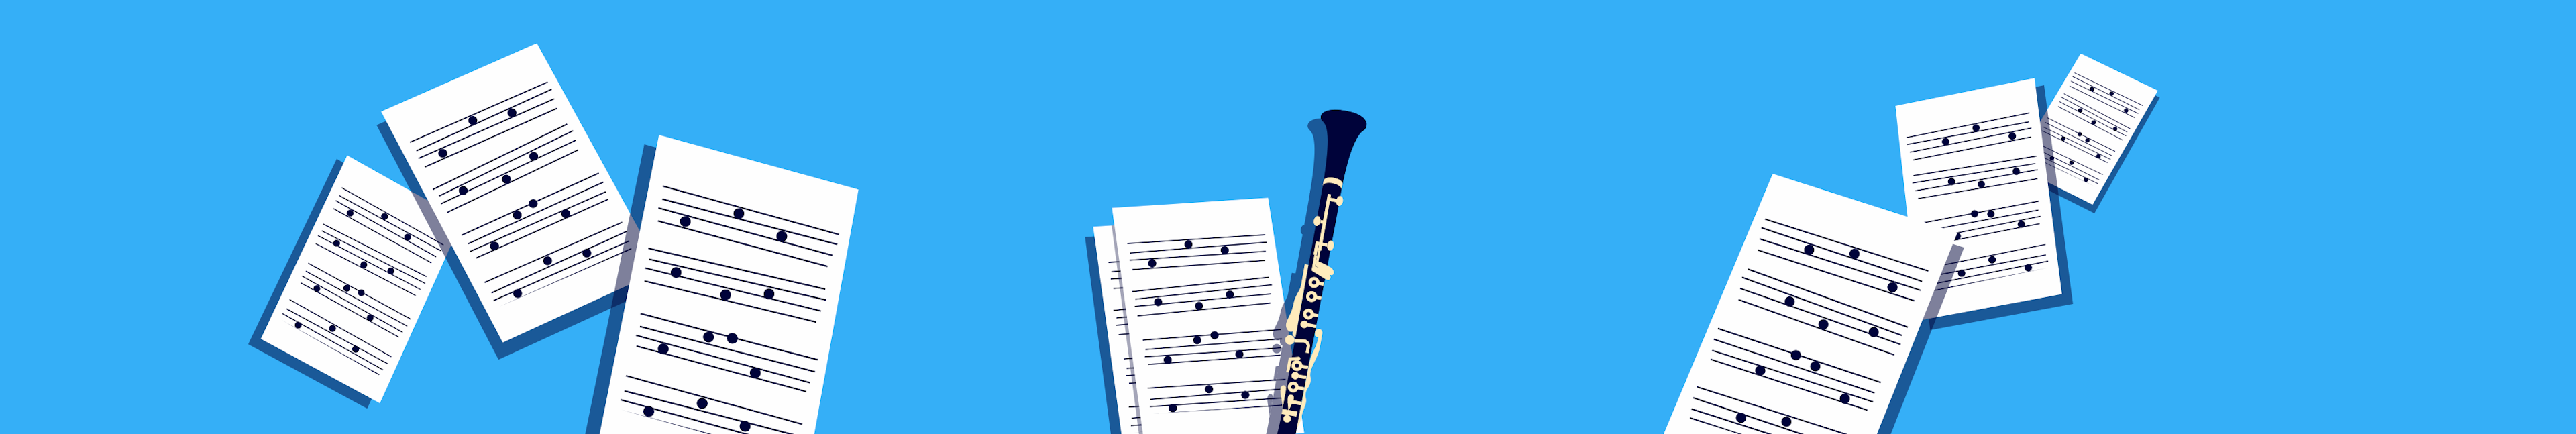 El repertorio del clarinetista